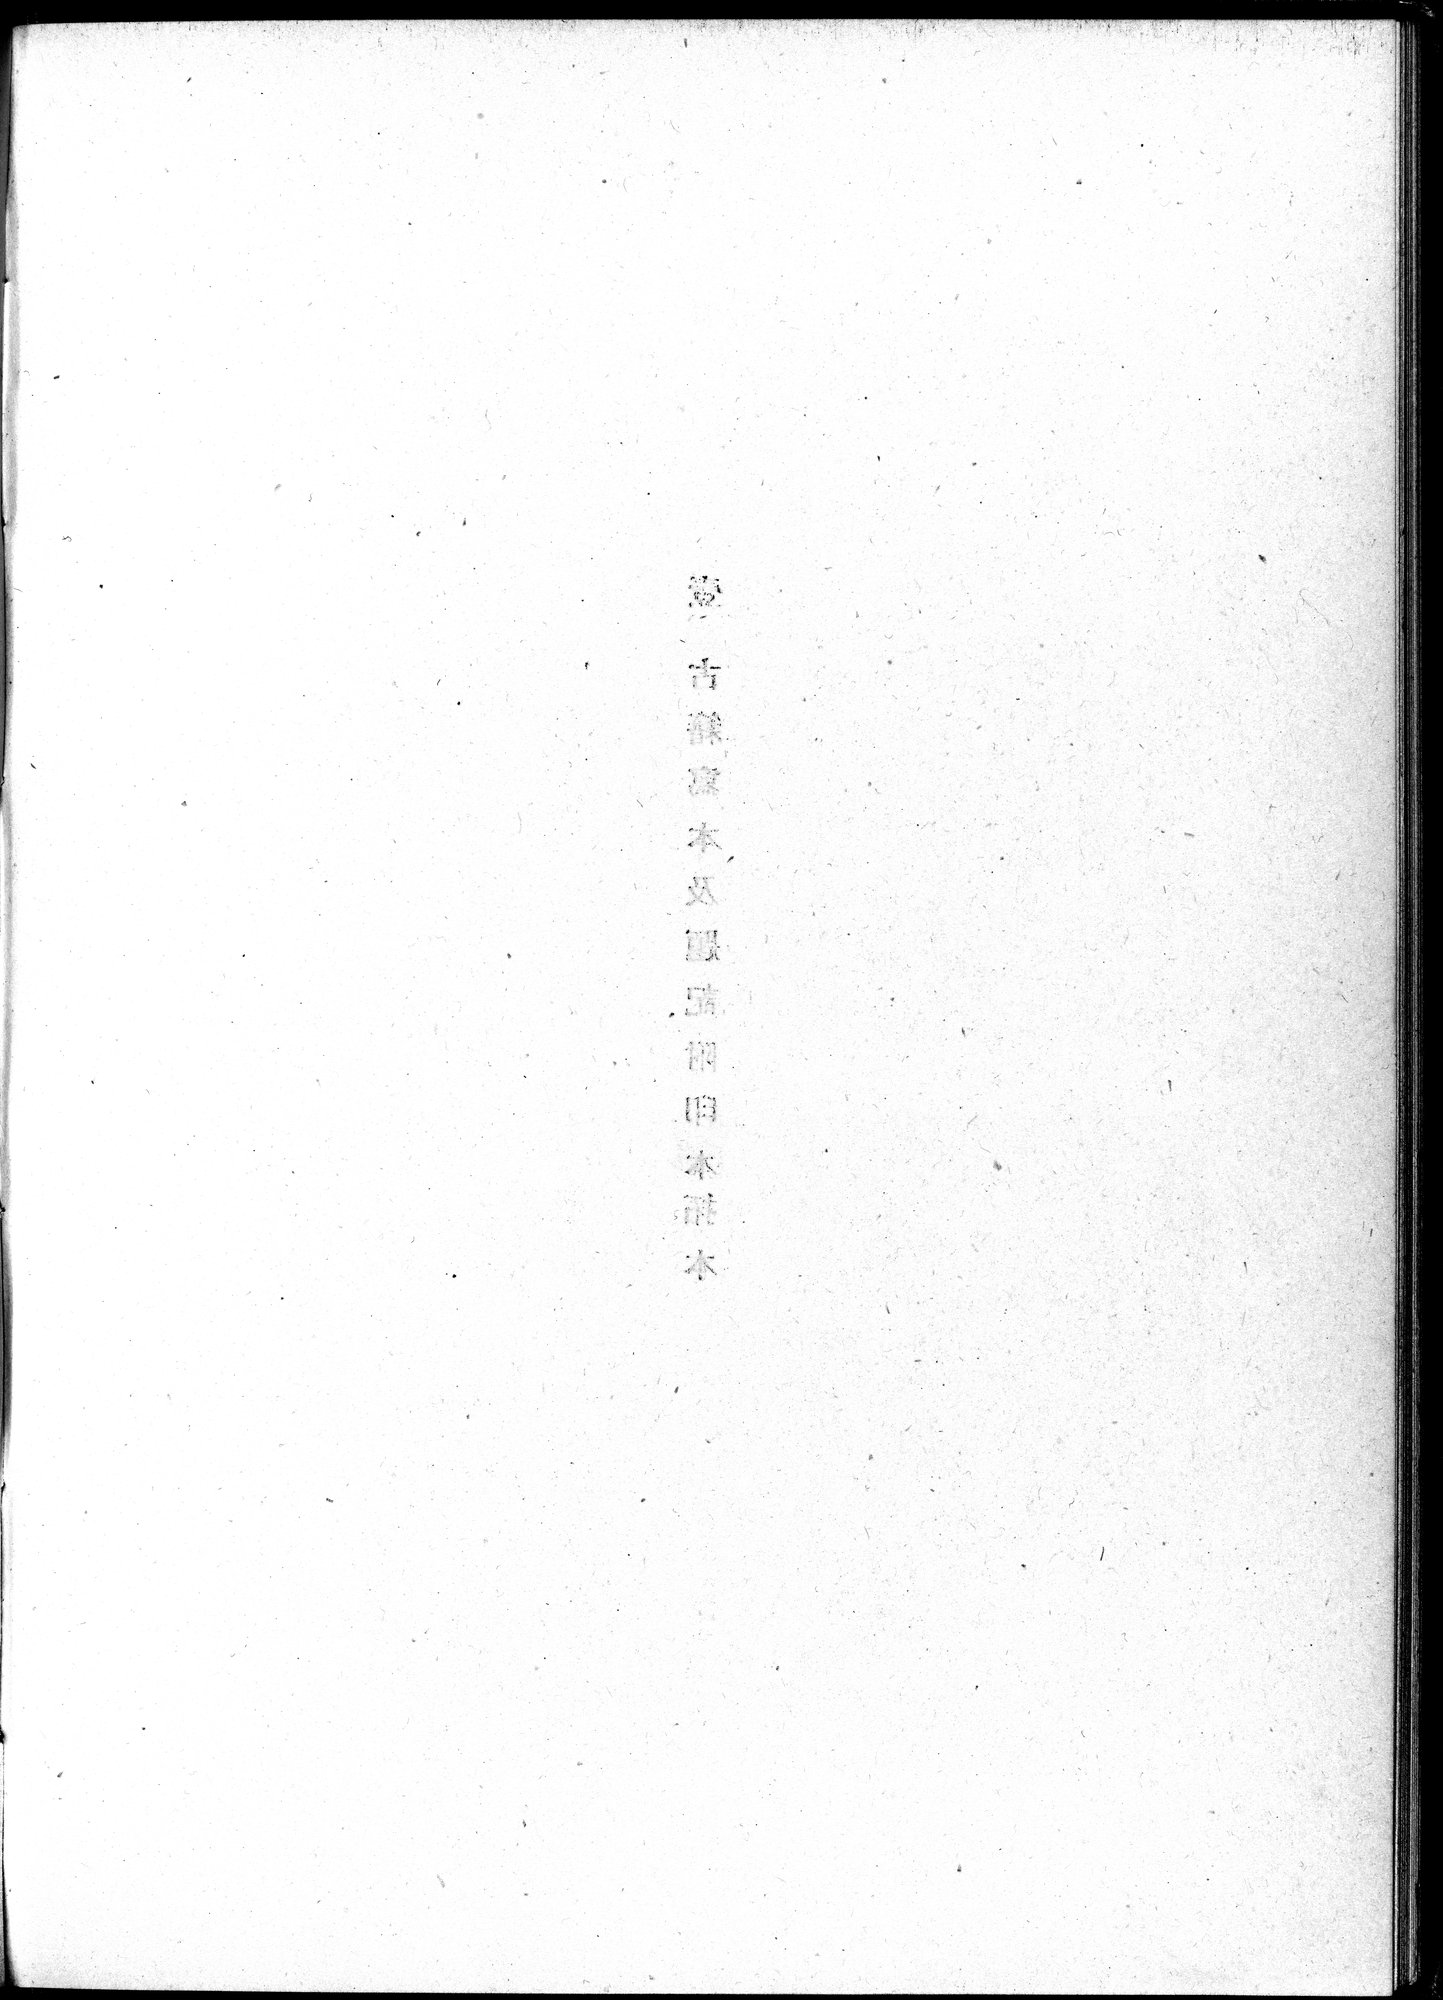 吐魯番考古記 : vol.1 / Page 104 (Grayscale High Resolution Image)